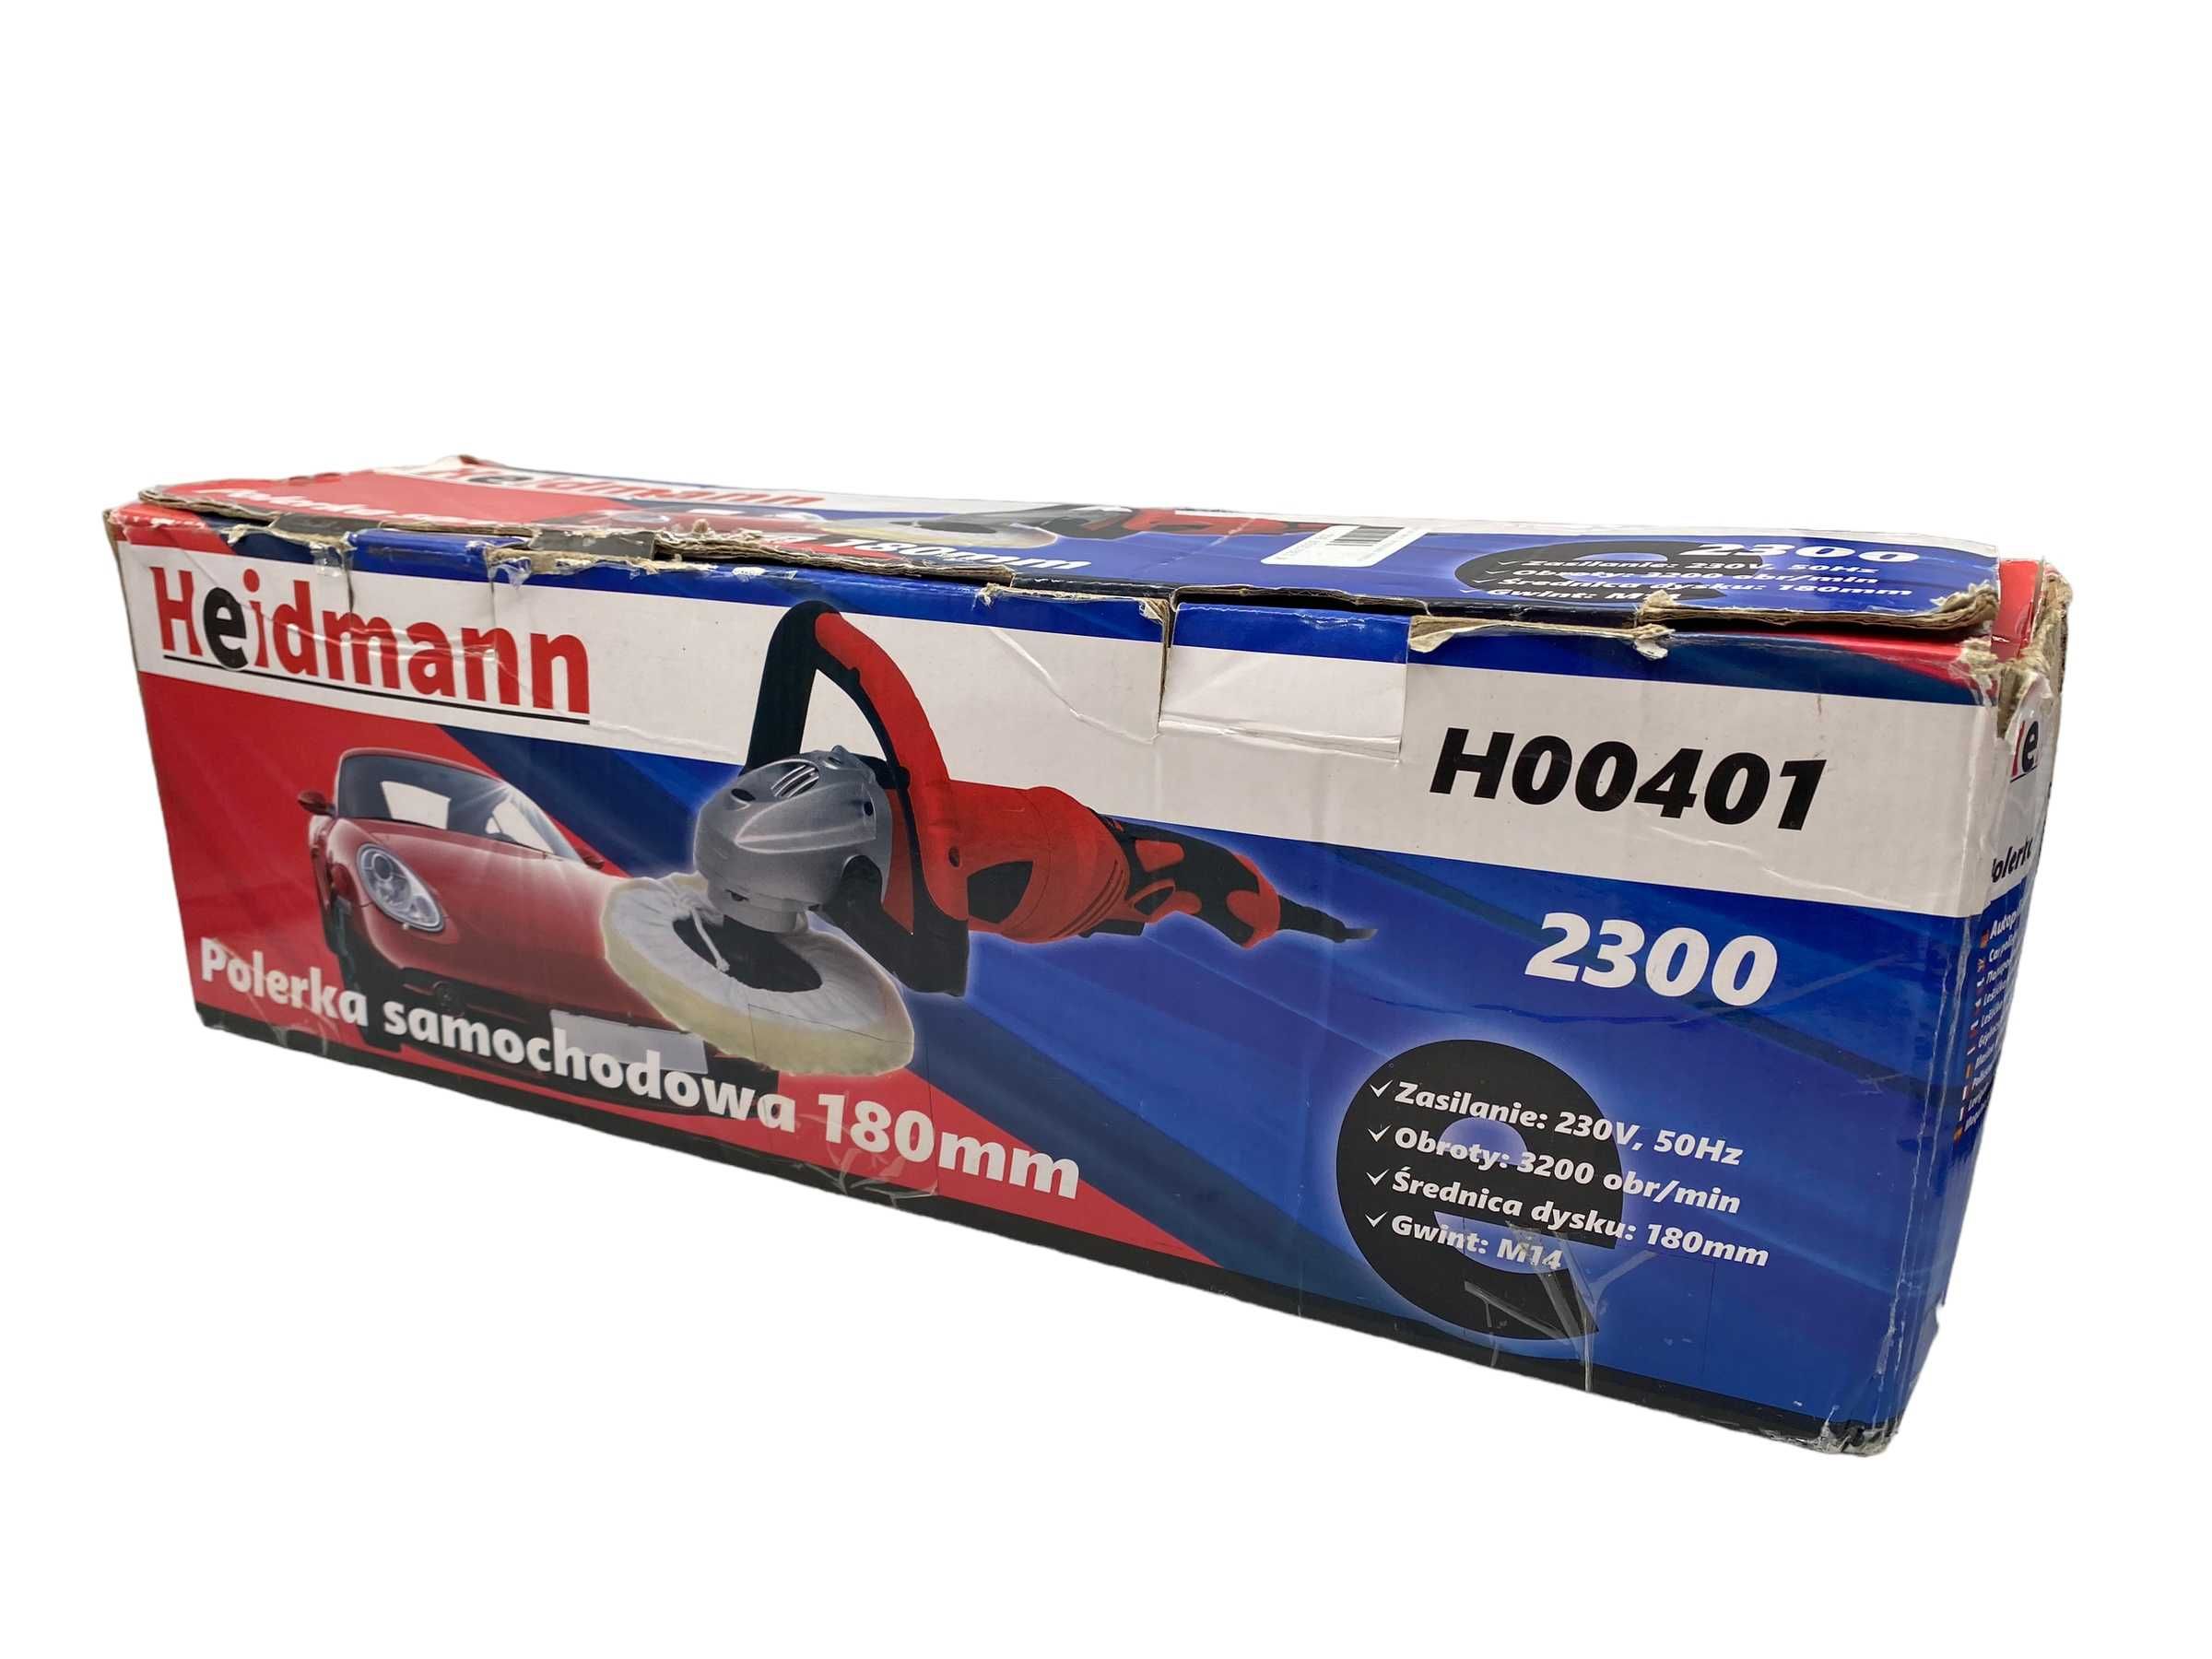 Polerka samochodowa Heidmann H00401 - 2300 W